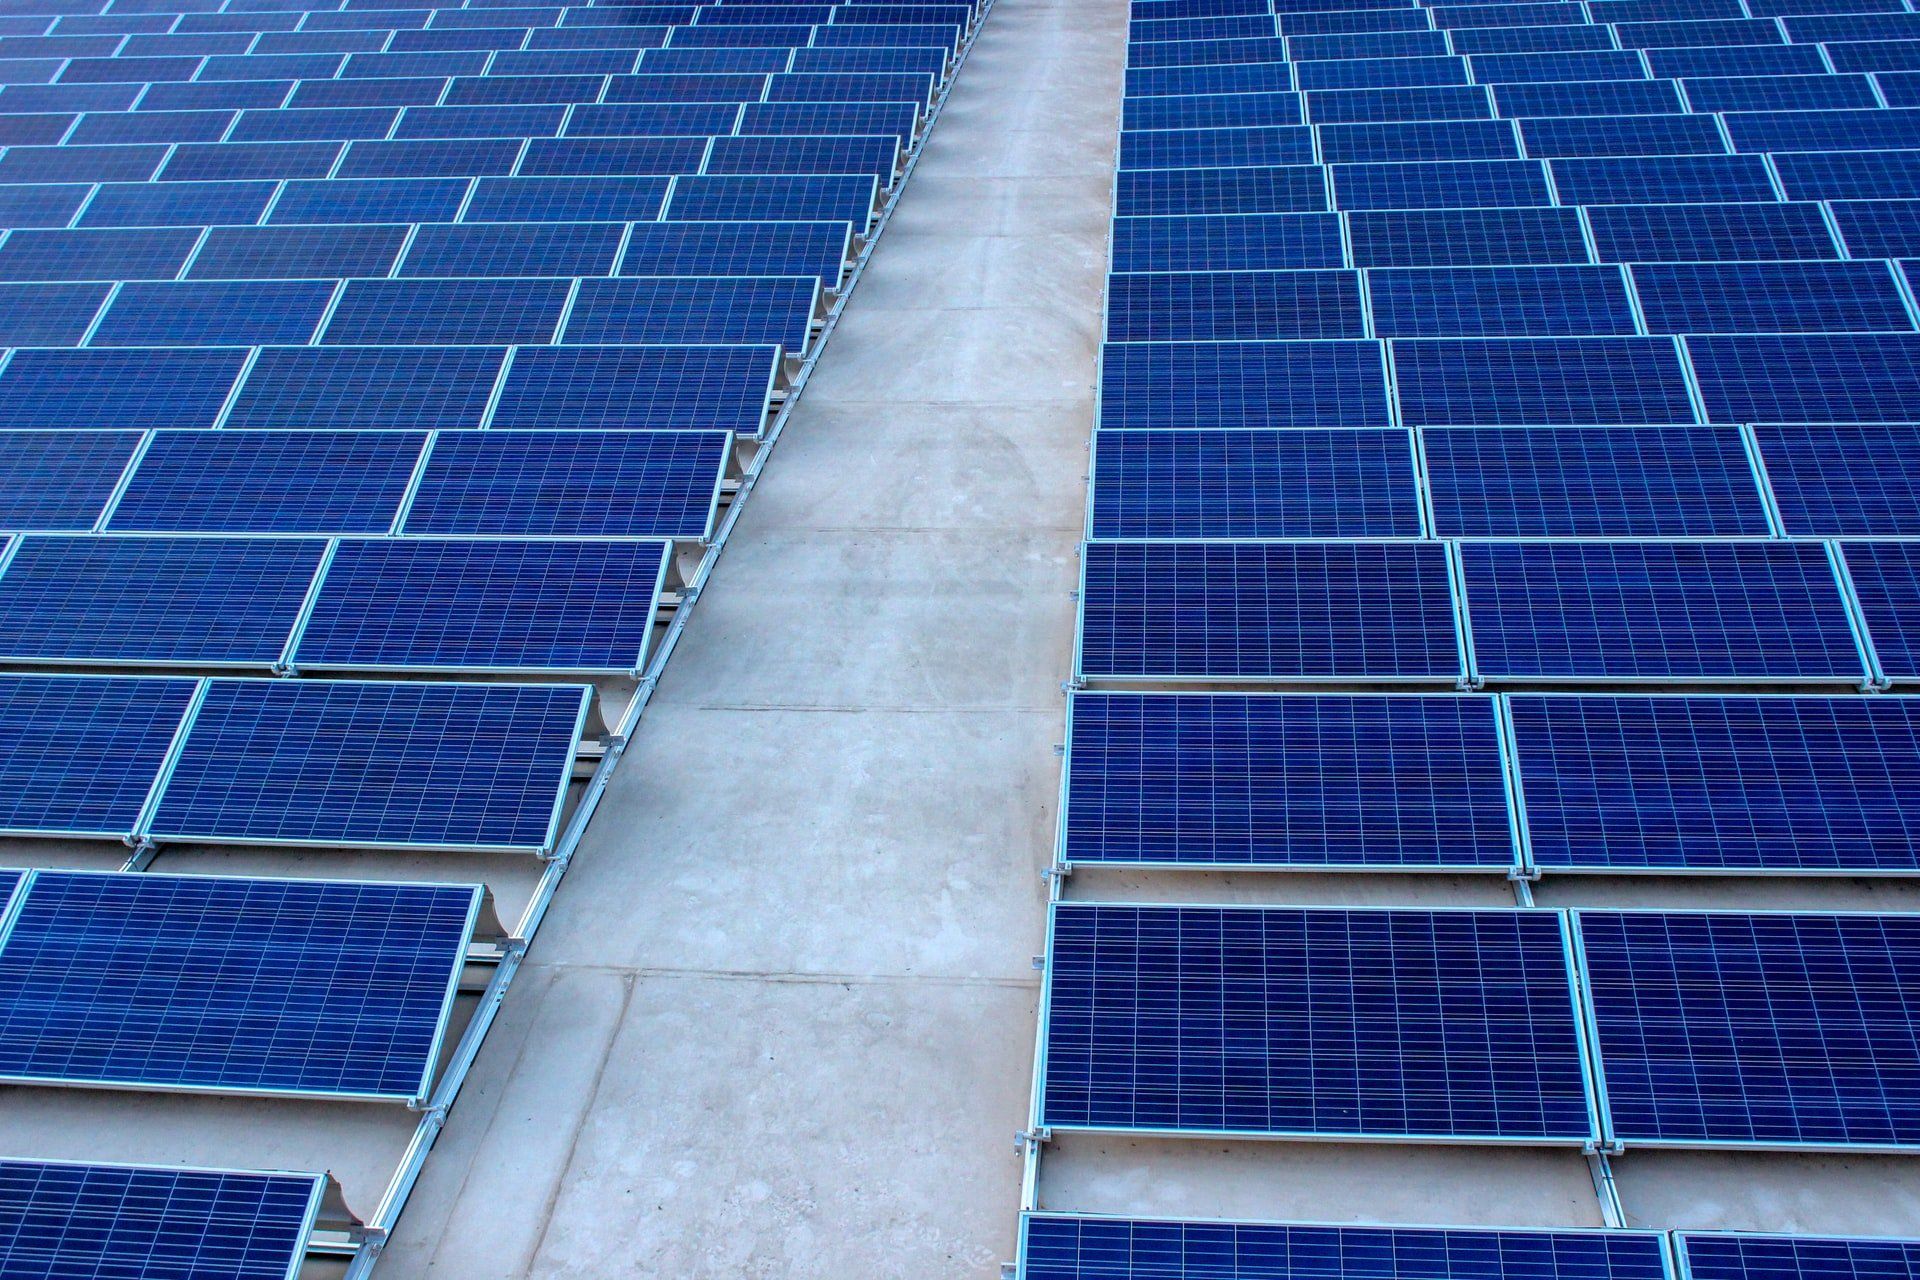 commercial solar panel installation